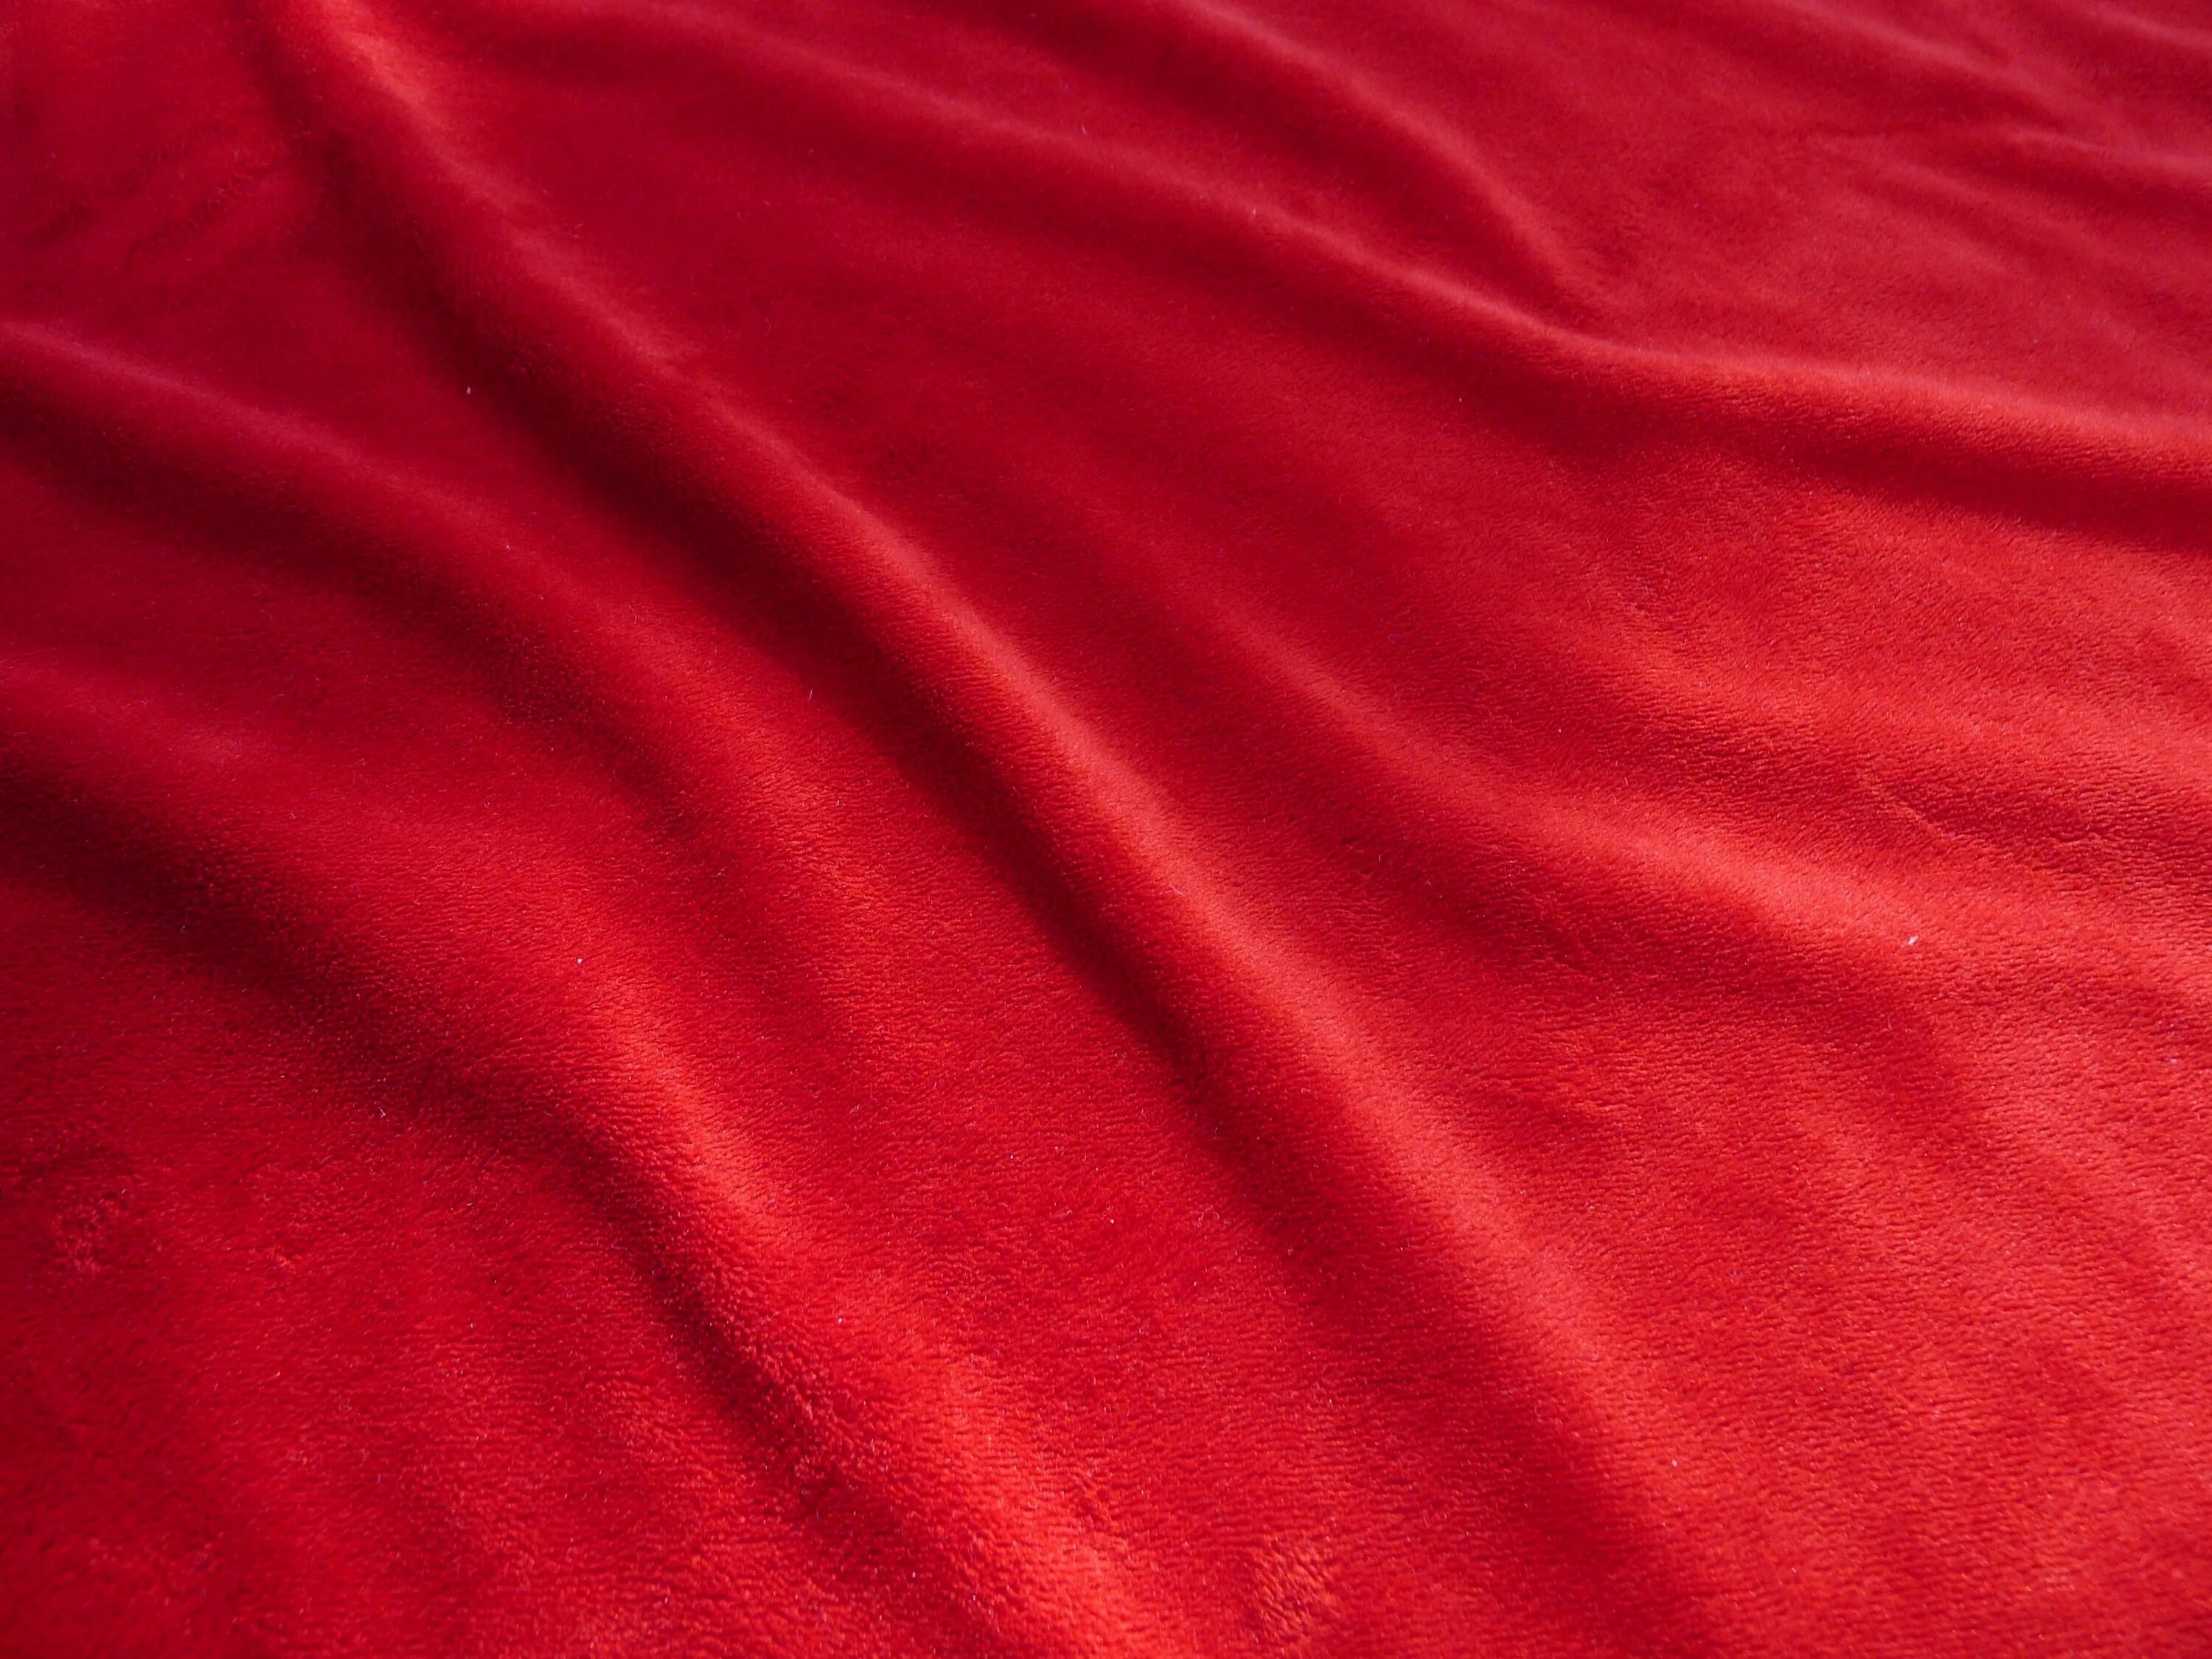 Red Velvet ткань. Красная ткань. Красная бархатная ткань. Бордовая ткань. Материя складка